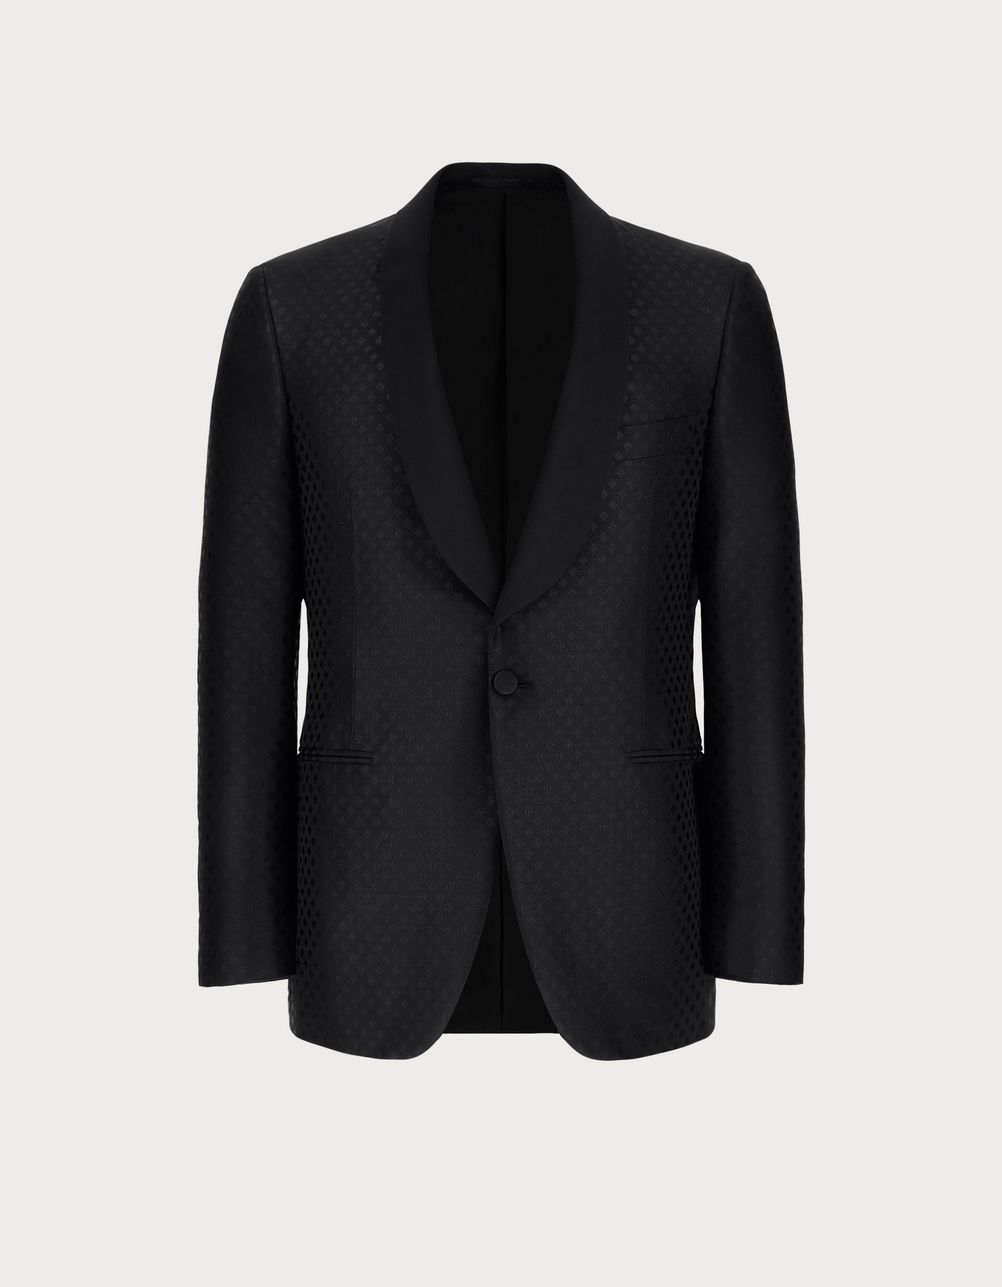 Black smoking jacket in silk